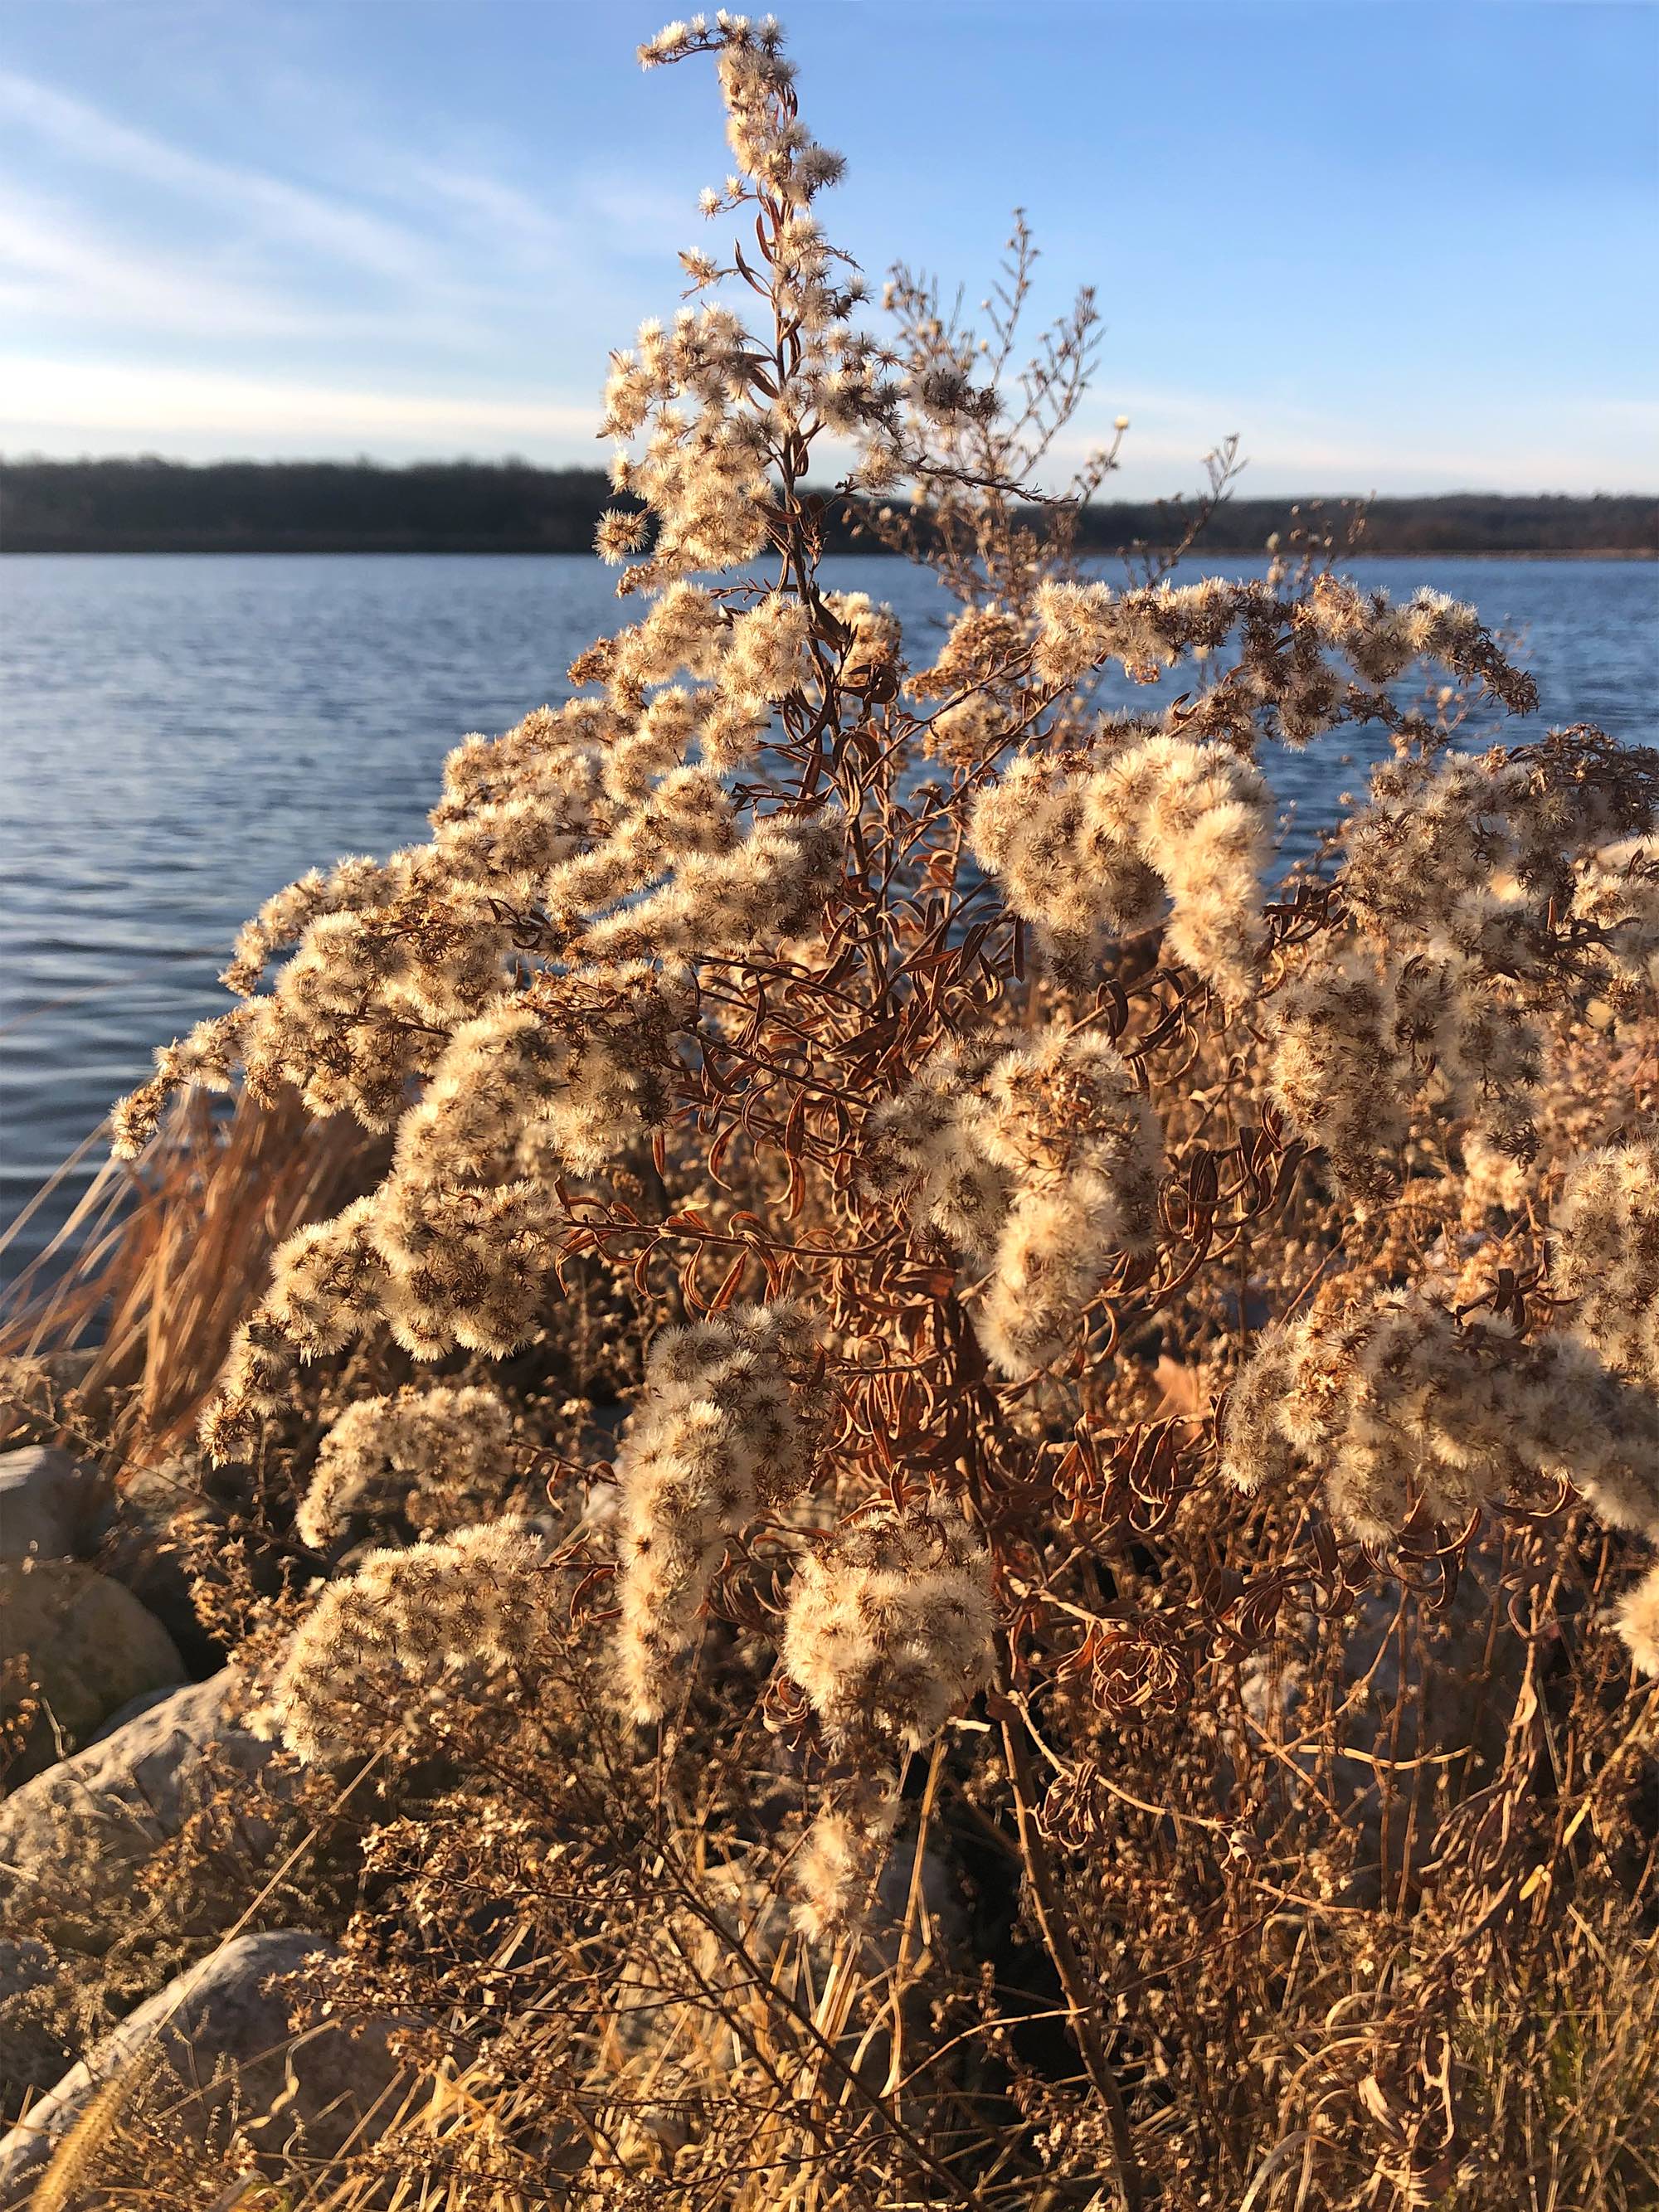 Goldenrod fluff on shore of Lake Wingra on November 29, 2020.